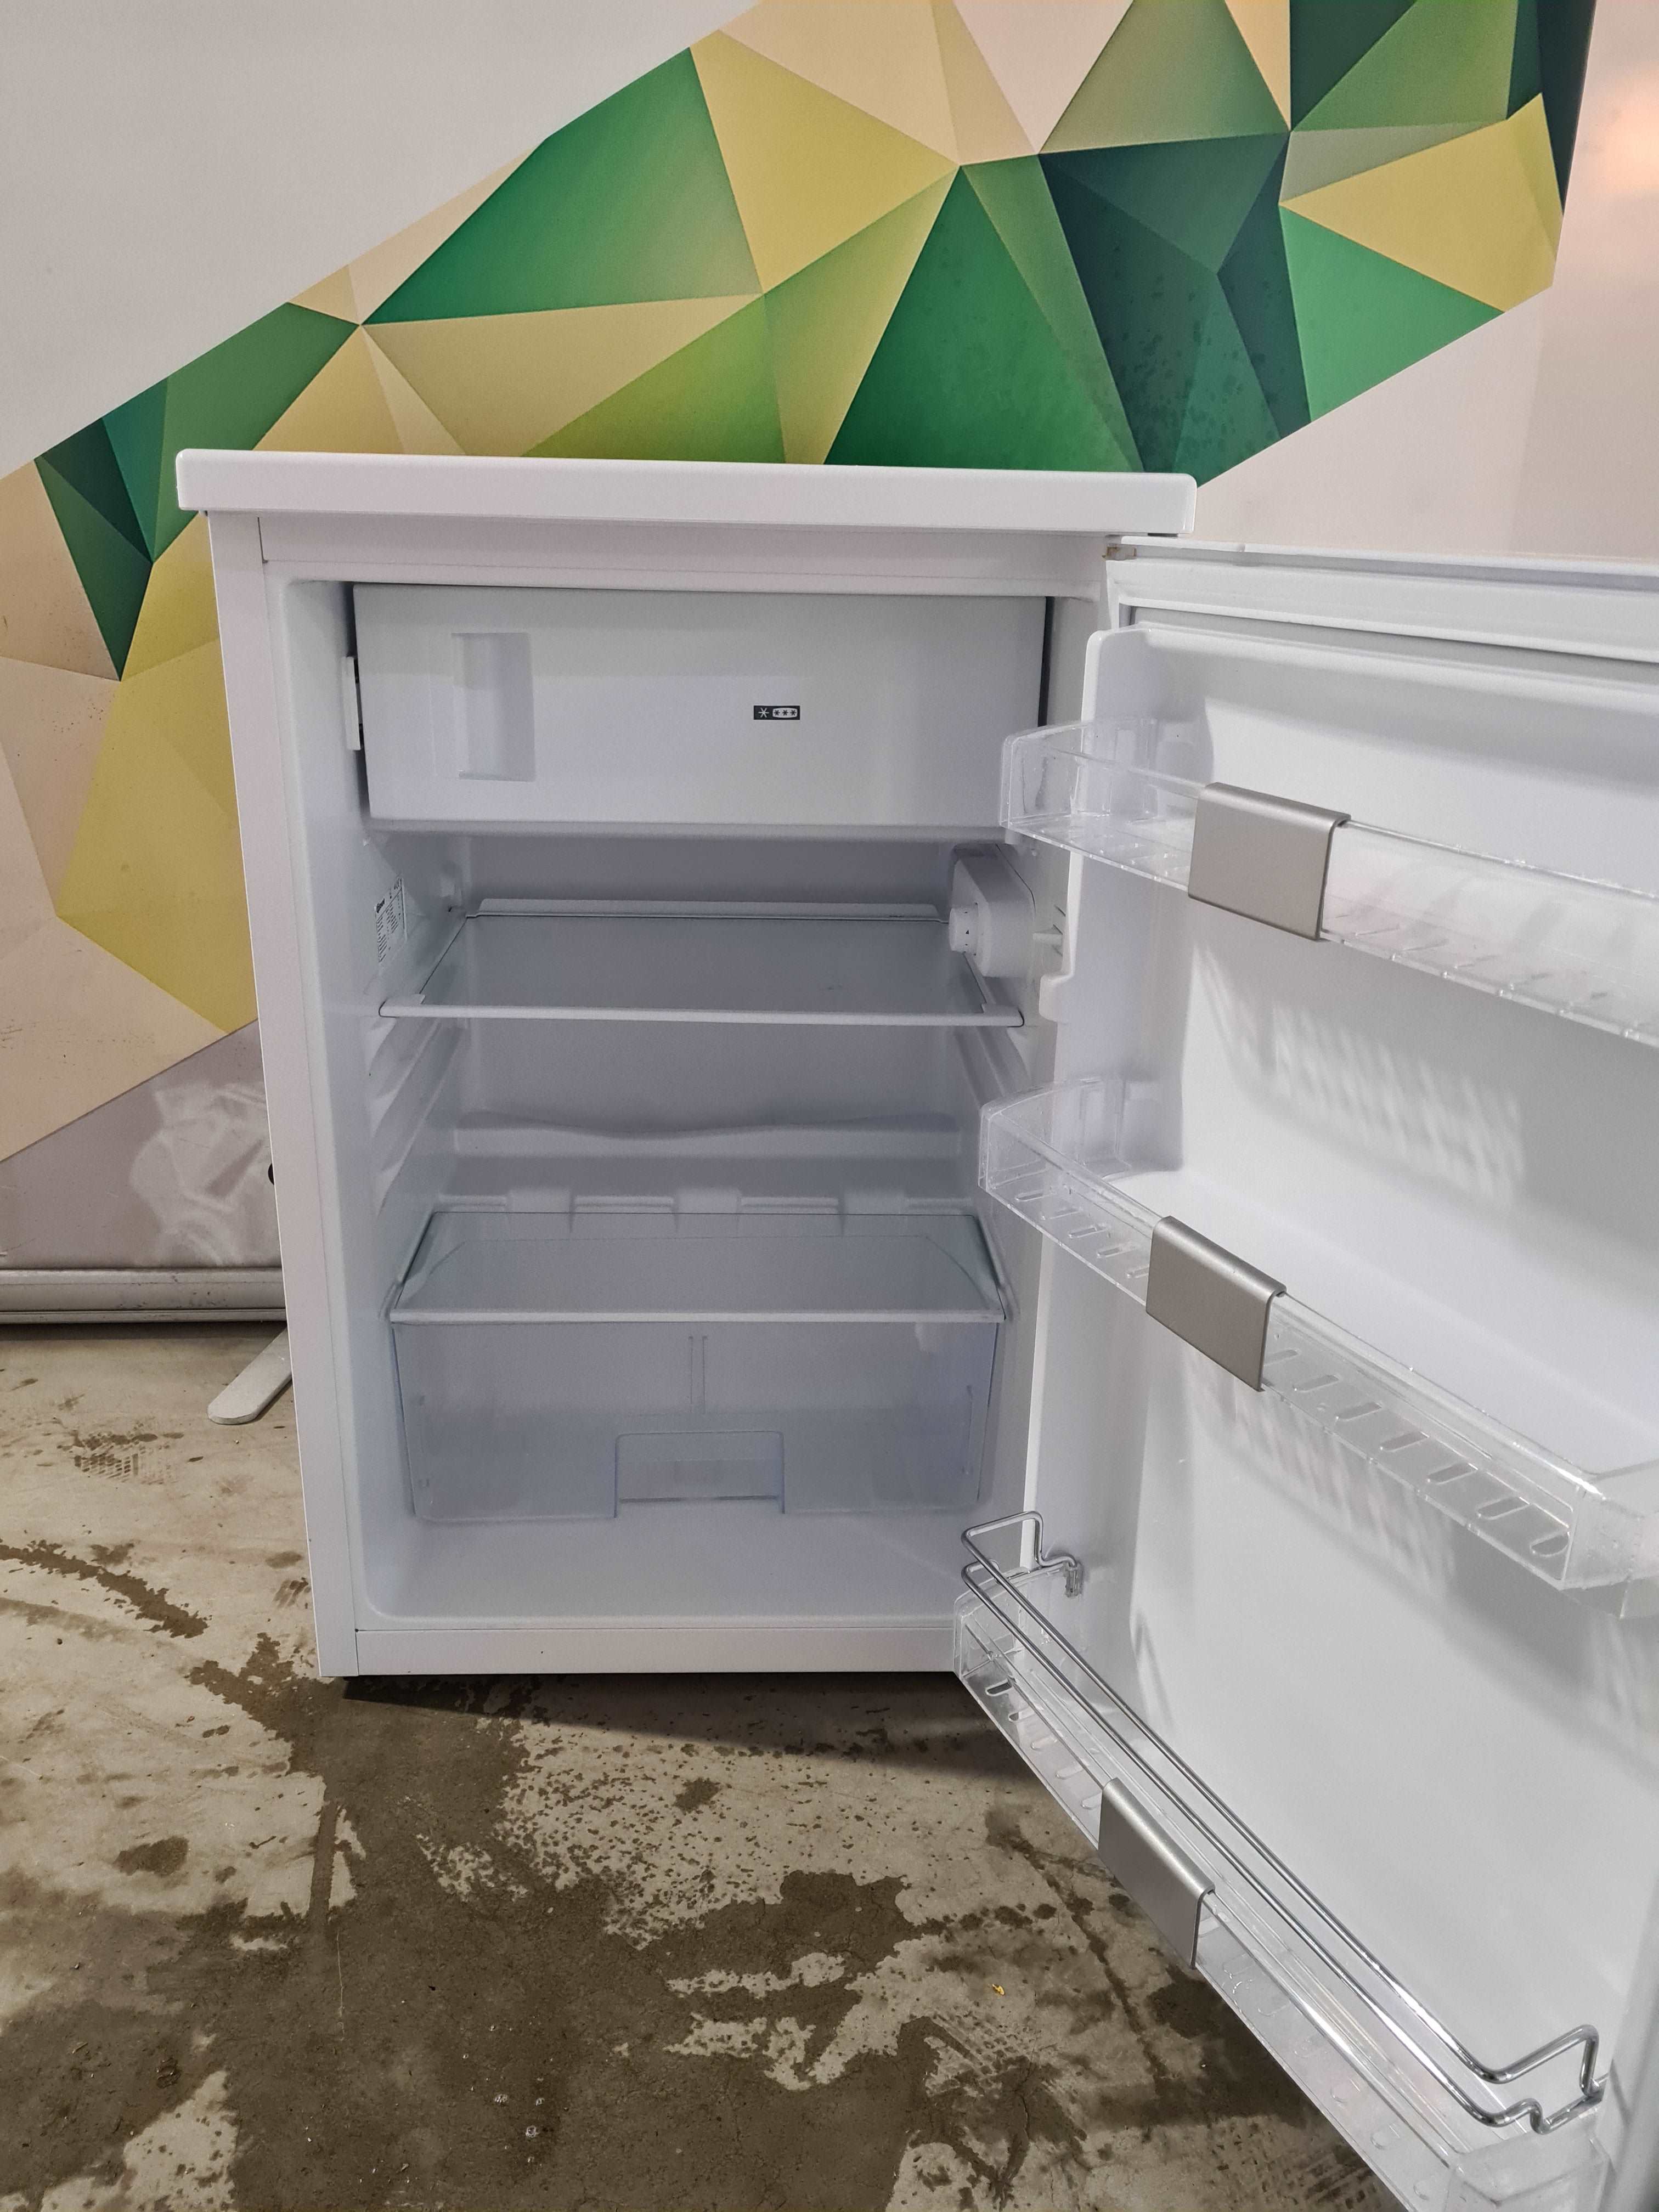 Gram kjøleskap KF 3135-90 (Hvit)